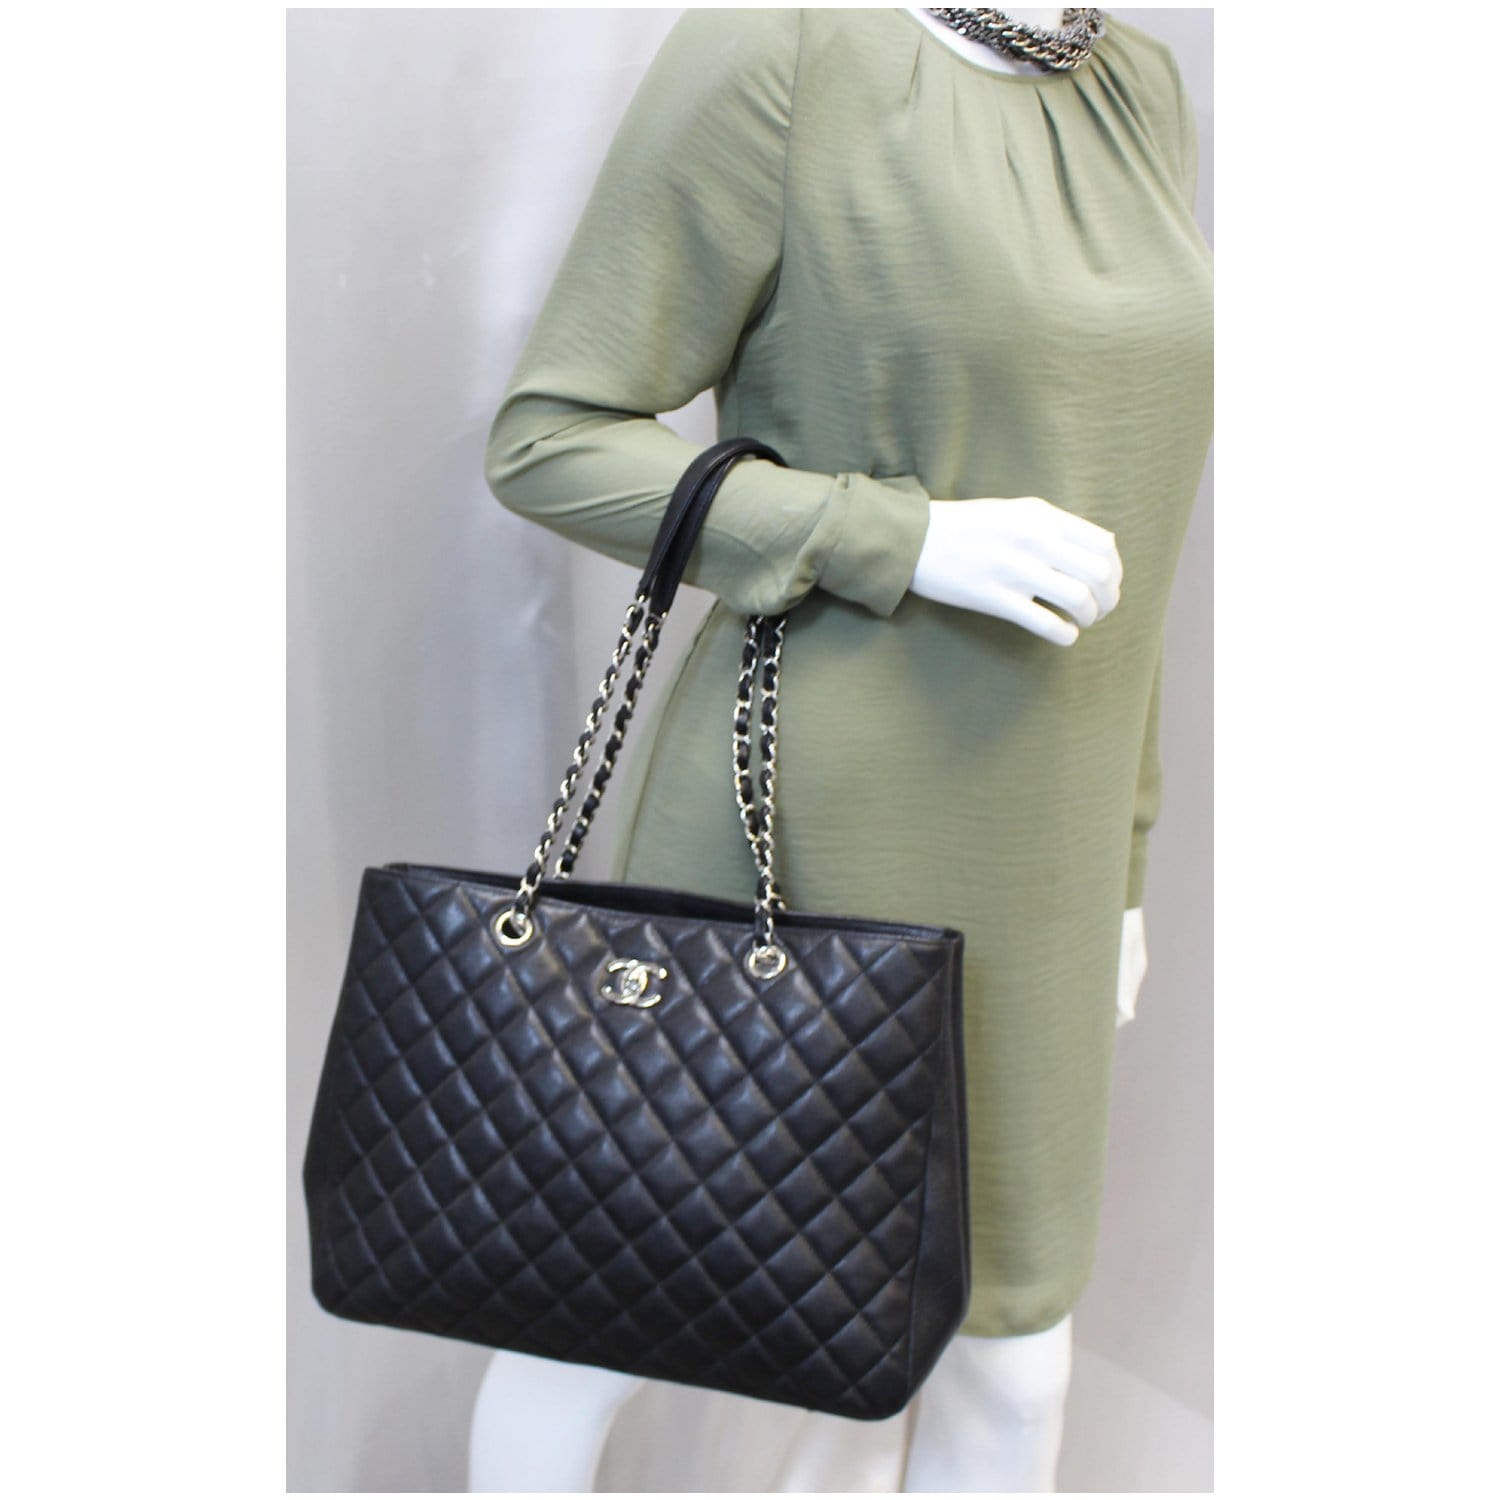 Designer Bag Women Caviar Bags Handbags Shoulder Bags Tote Bagg